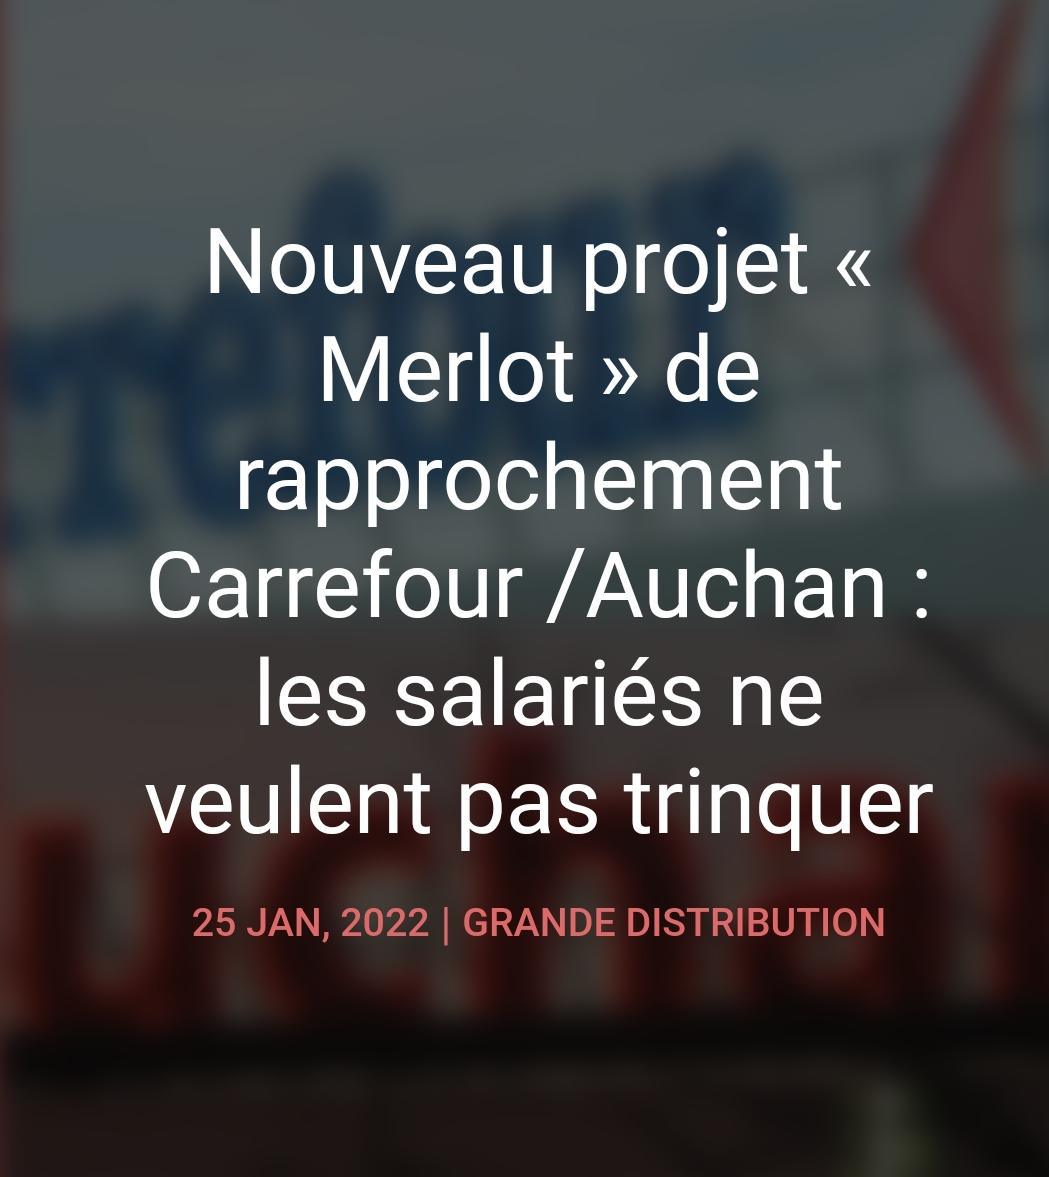 Projet (Merlot) Carrefour/Auchan